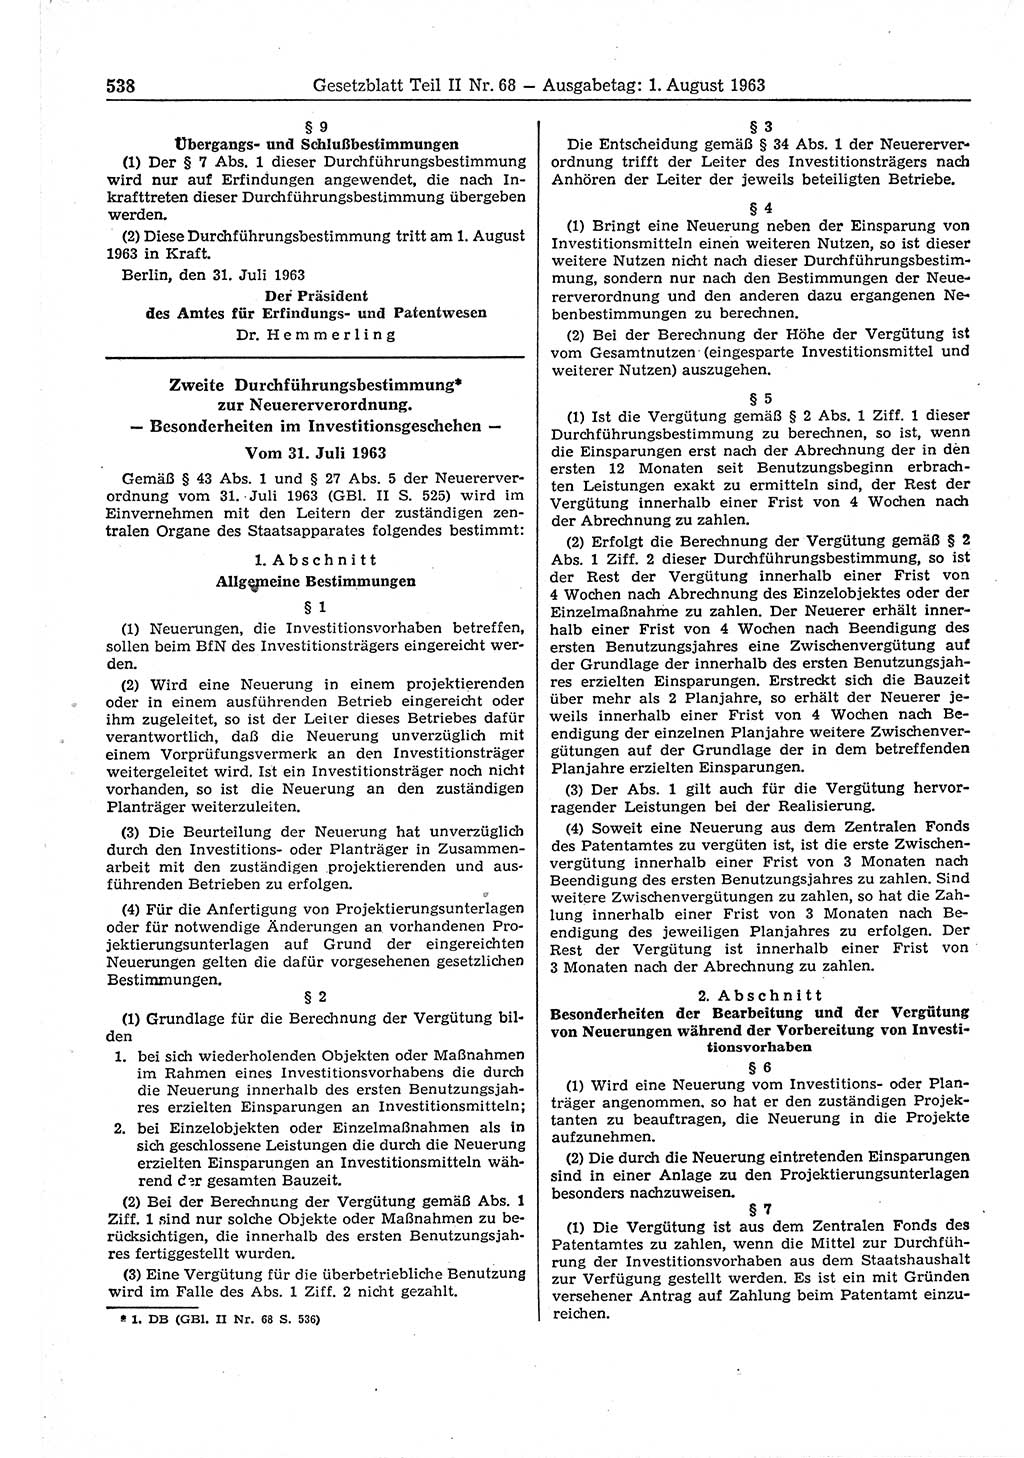 Gesetzblatt (GBl.) der Deutschen Demokratischen Republik (DDR) Teil ⅠⅠ 1963, Seite 538 (GBl. DDR ⅠⅠ 1963, S. 538)